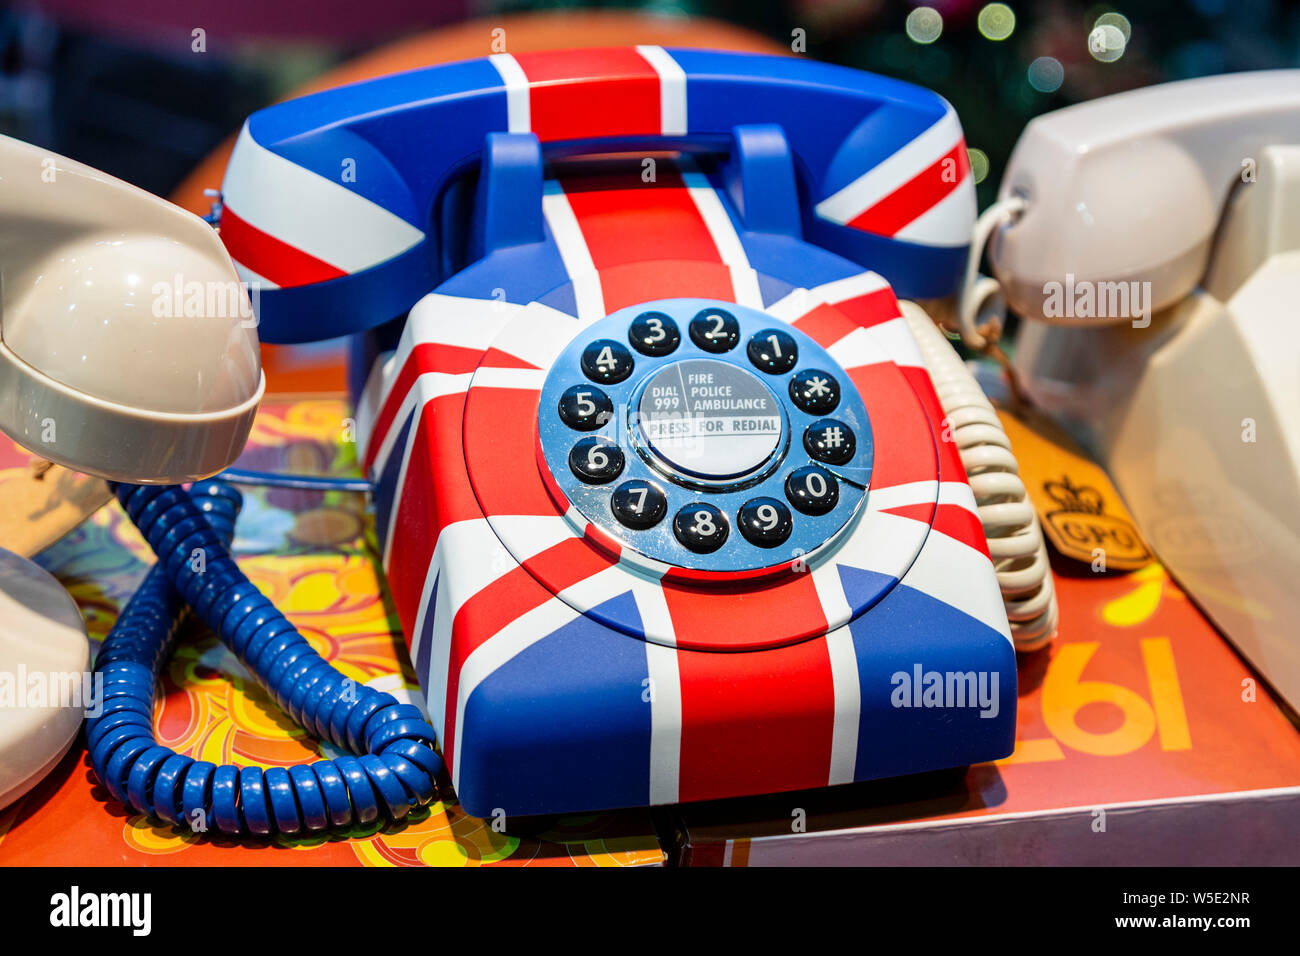 Téléphone à cadran rotatif rétro avec un drapeau de l'Union ou Union Jack design, Londres, Angleterre, Royaume-Uni Banque D'Images